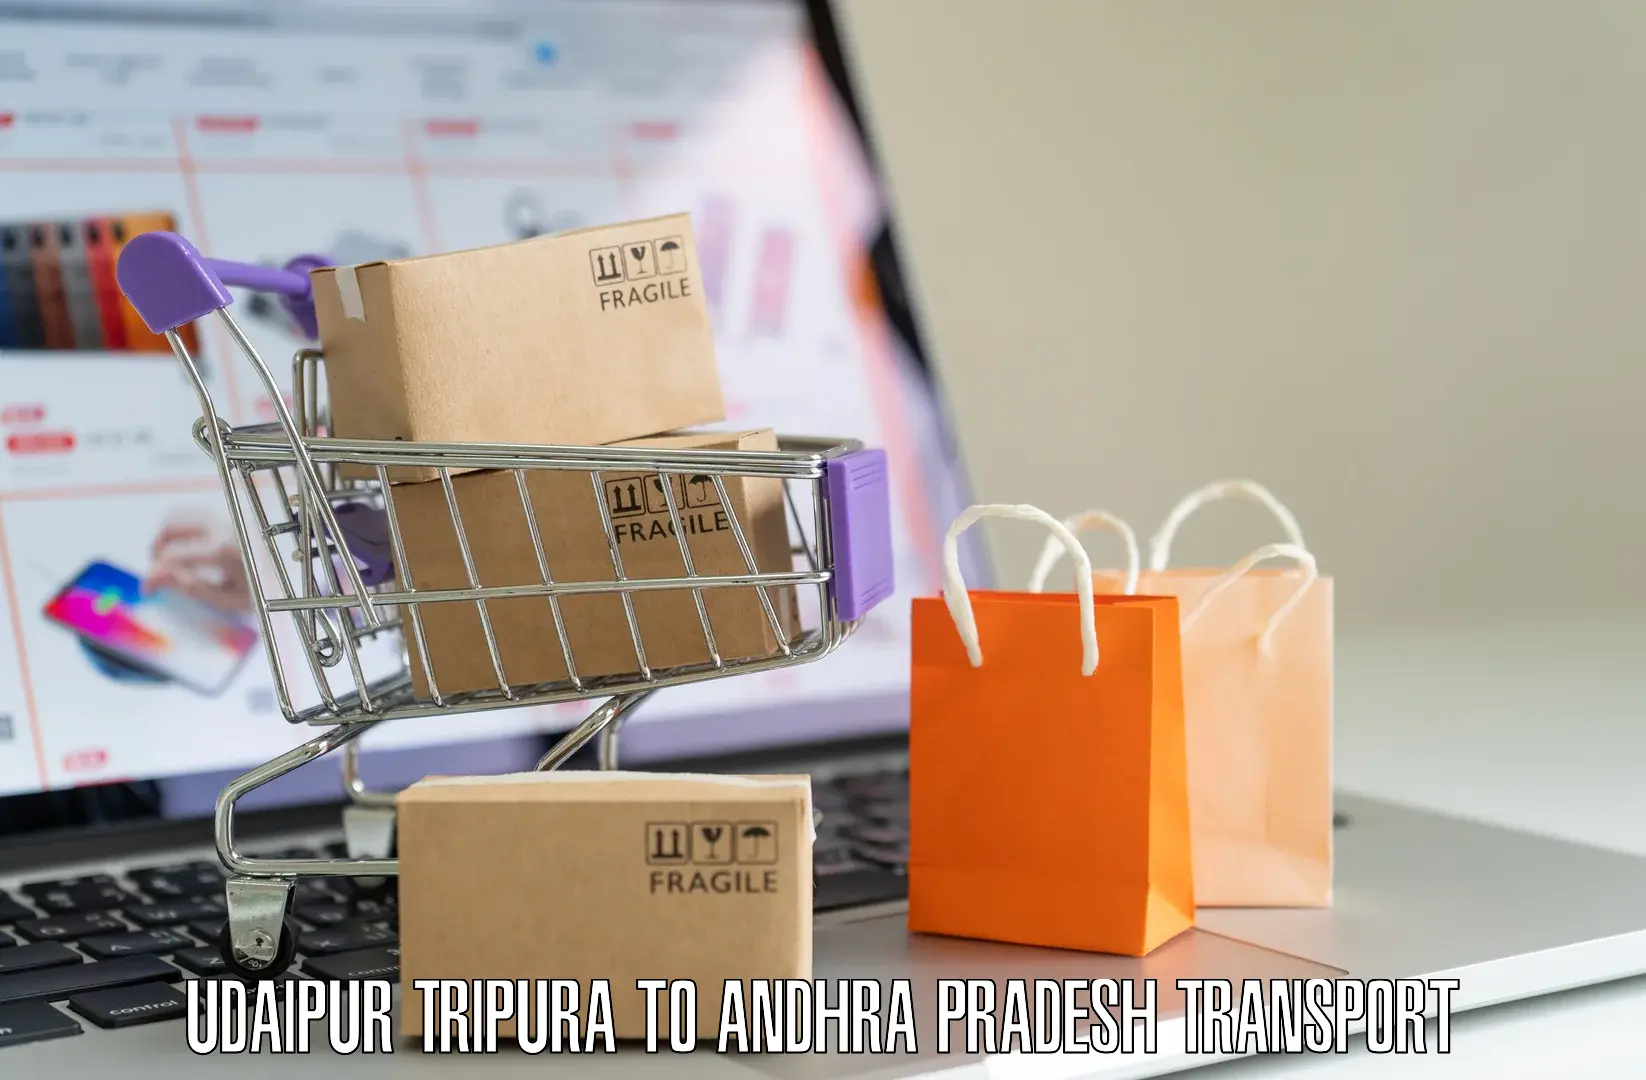 Online transport booking Udaipur Tripura to Andhra Pradesh